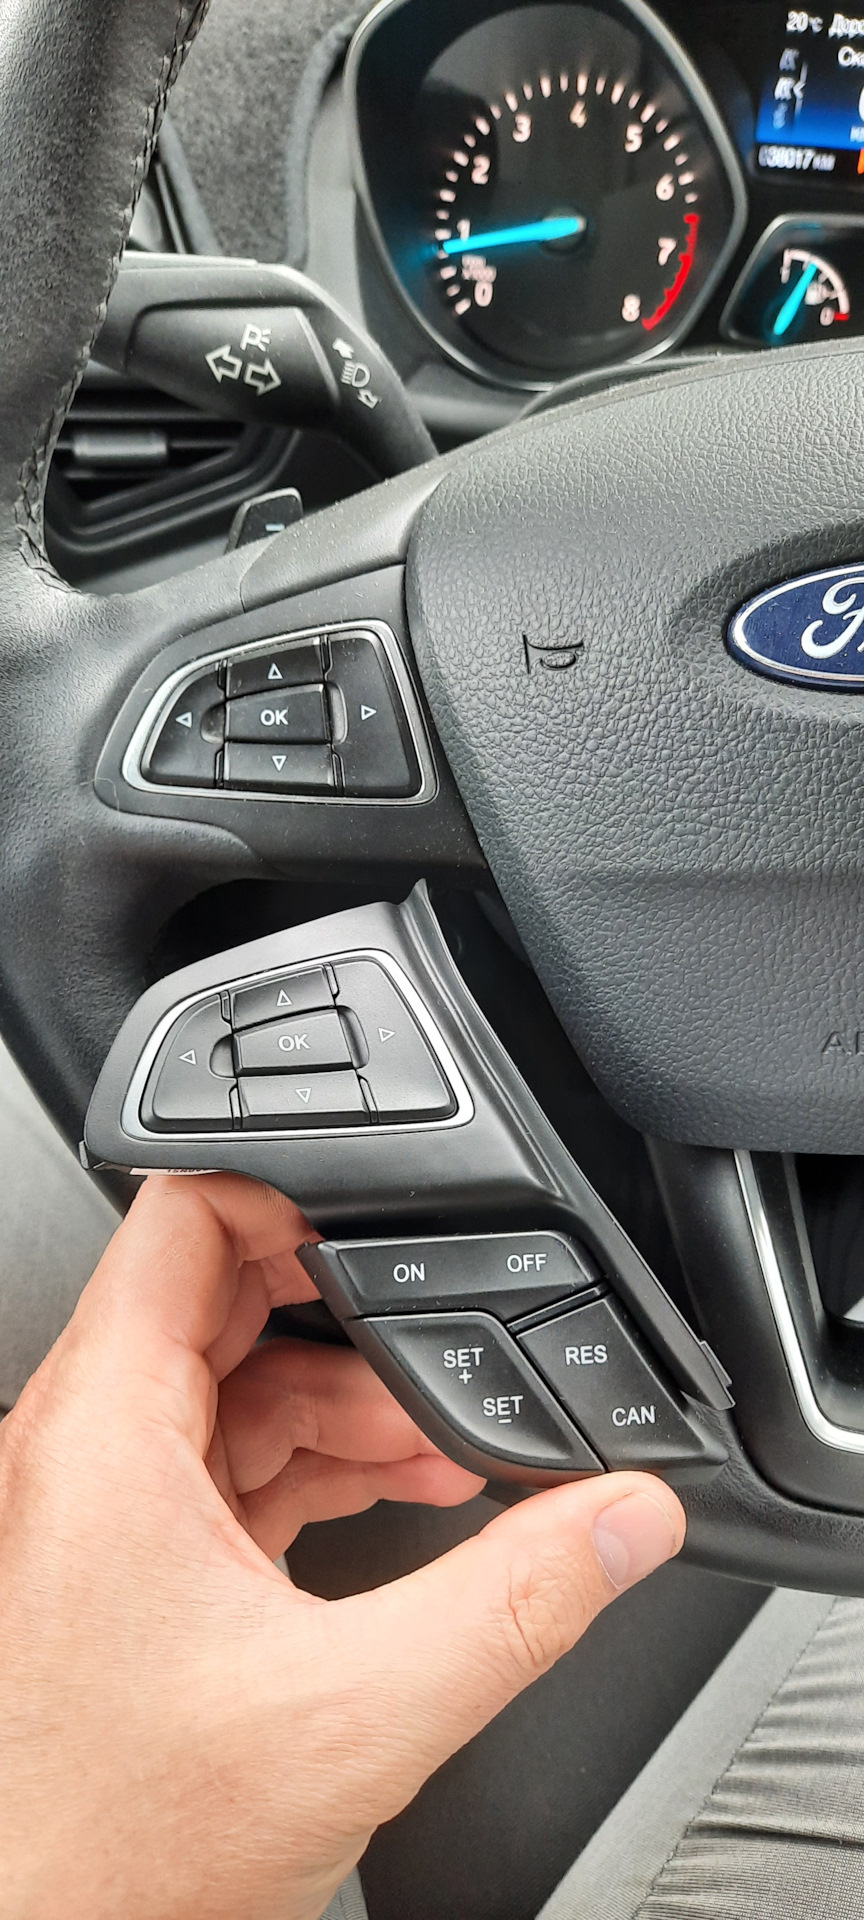 Круиз куга 2. Круиз-контроль Ford Kuga 2. Кнопки круиз контроля Форд Куга 2. Круиз контроль Куга 2.5. Кнопки круиз контроля Куга 2017.